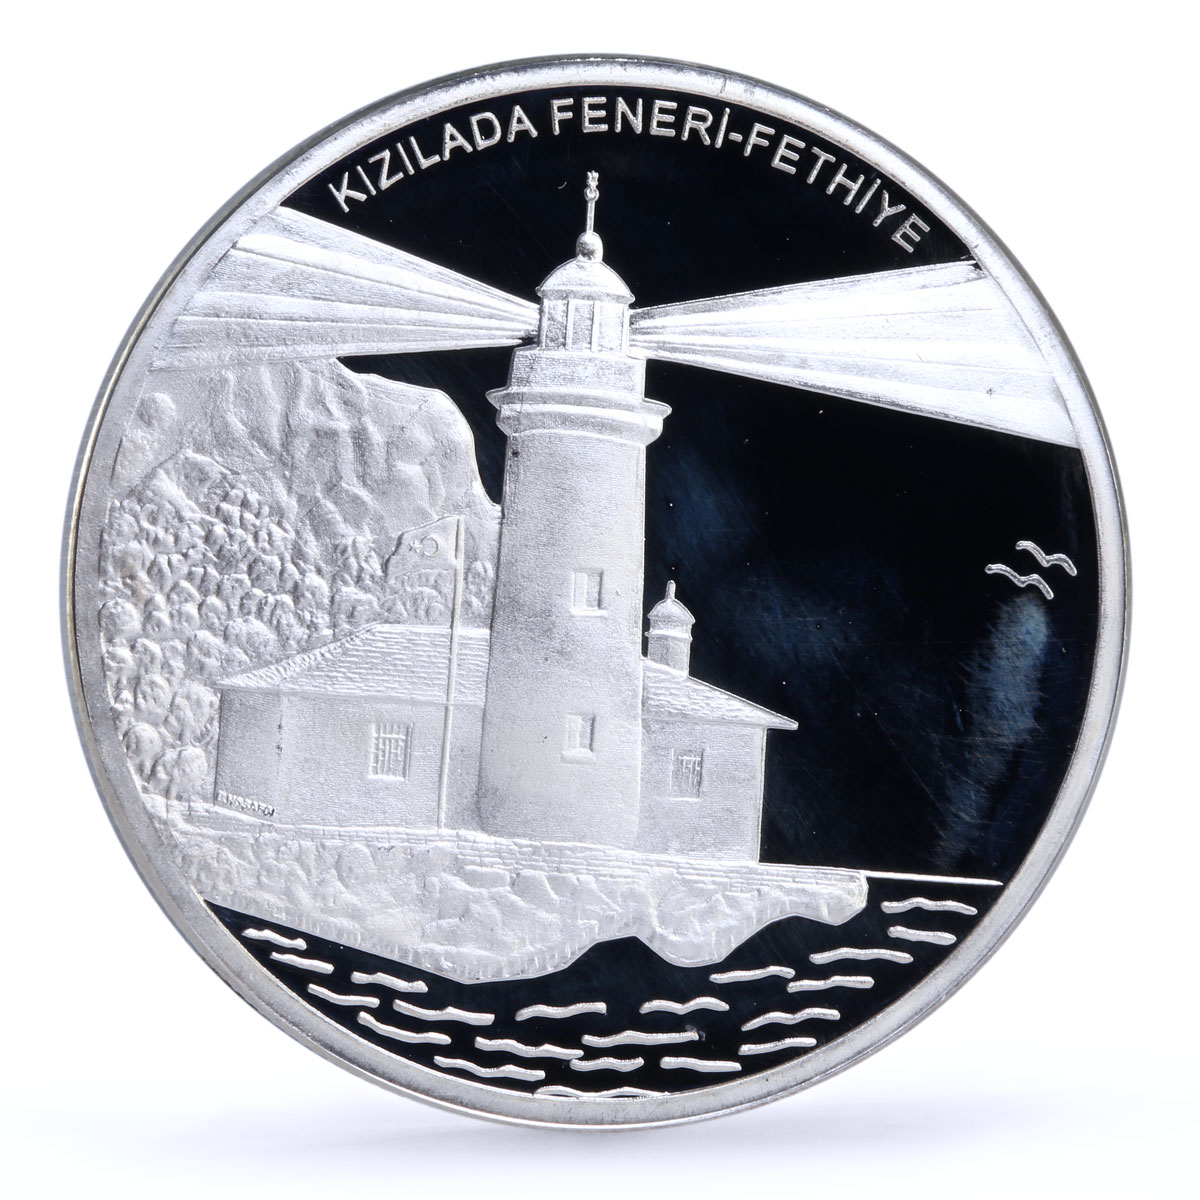 Turkey 40 lira Kizilada Lighthouse Sea Turtle Seal Fauna proof silver coin 2008